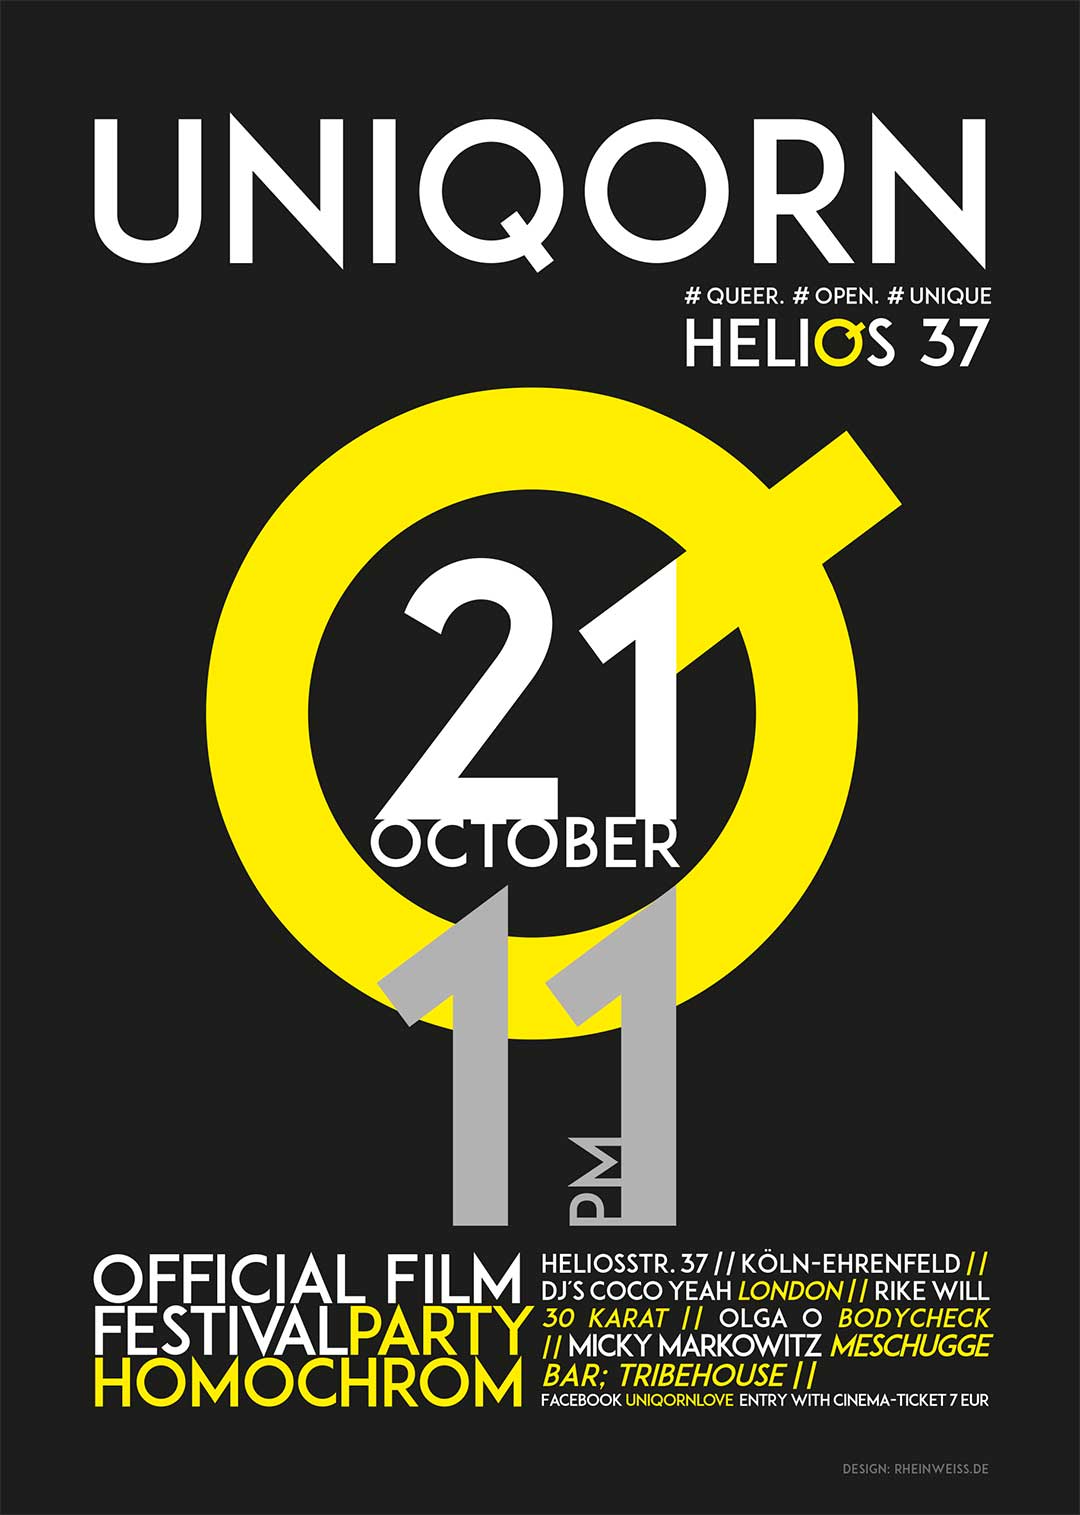 UNIQORN ist die Festivalparty des 7. Filmfests homochrom am Samstag 21.10.2017 ab 23 Uhr im Helios37 in Köln-Ehrenfeld; ermäßigter Eintritt von nur 7€ (statt 10€) mit Eintrittskarten des Filmfest